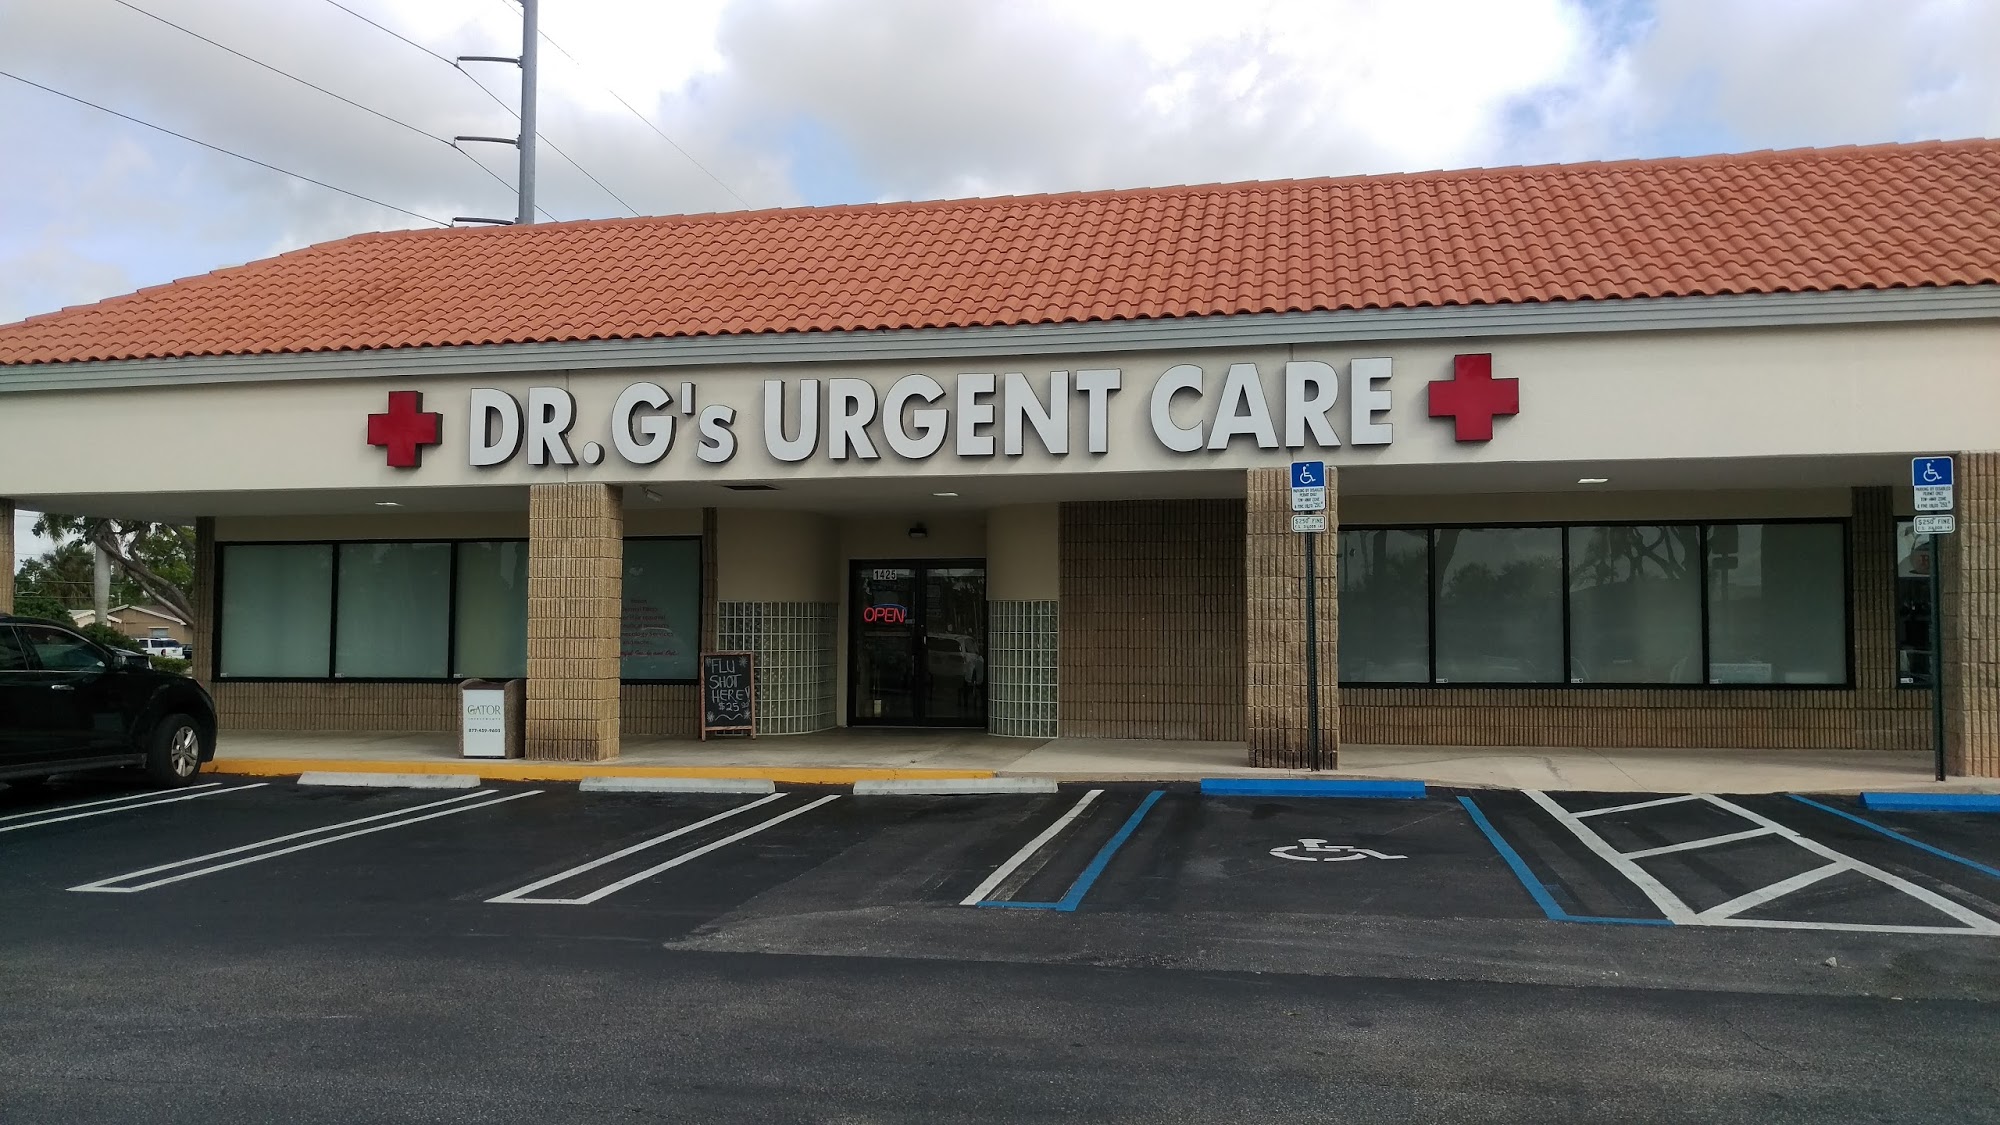 Dr G's Pharmacy